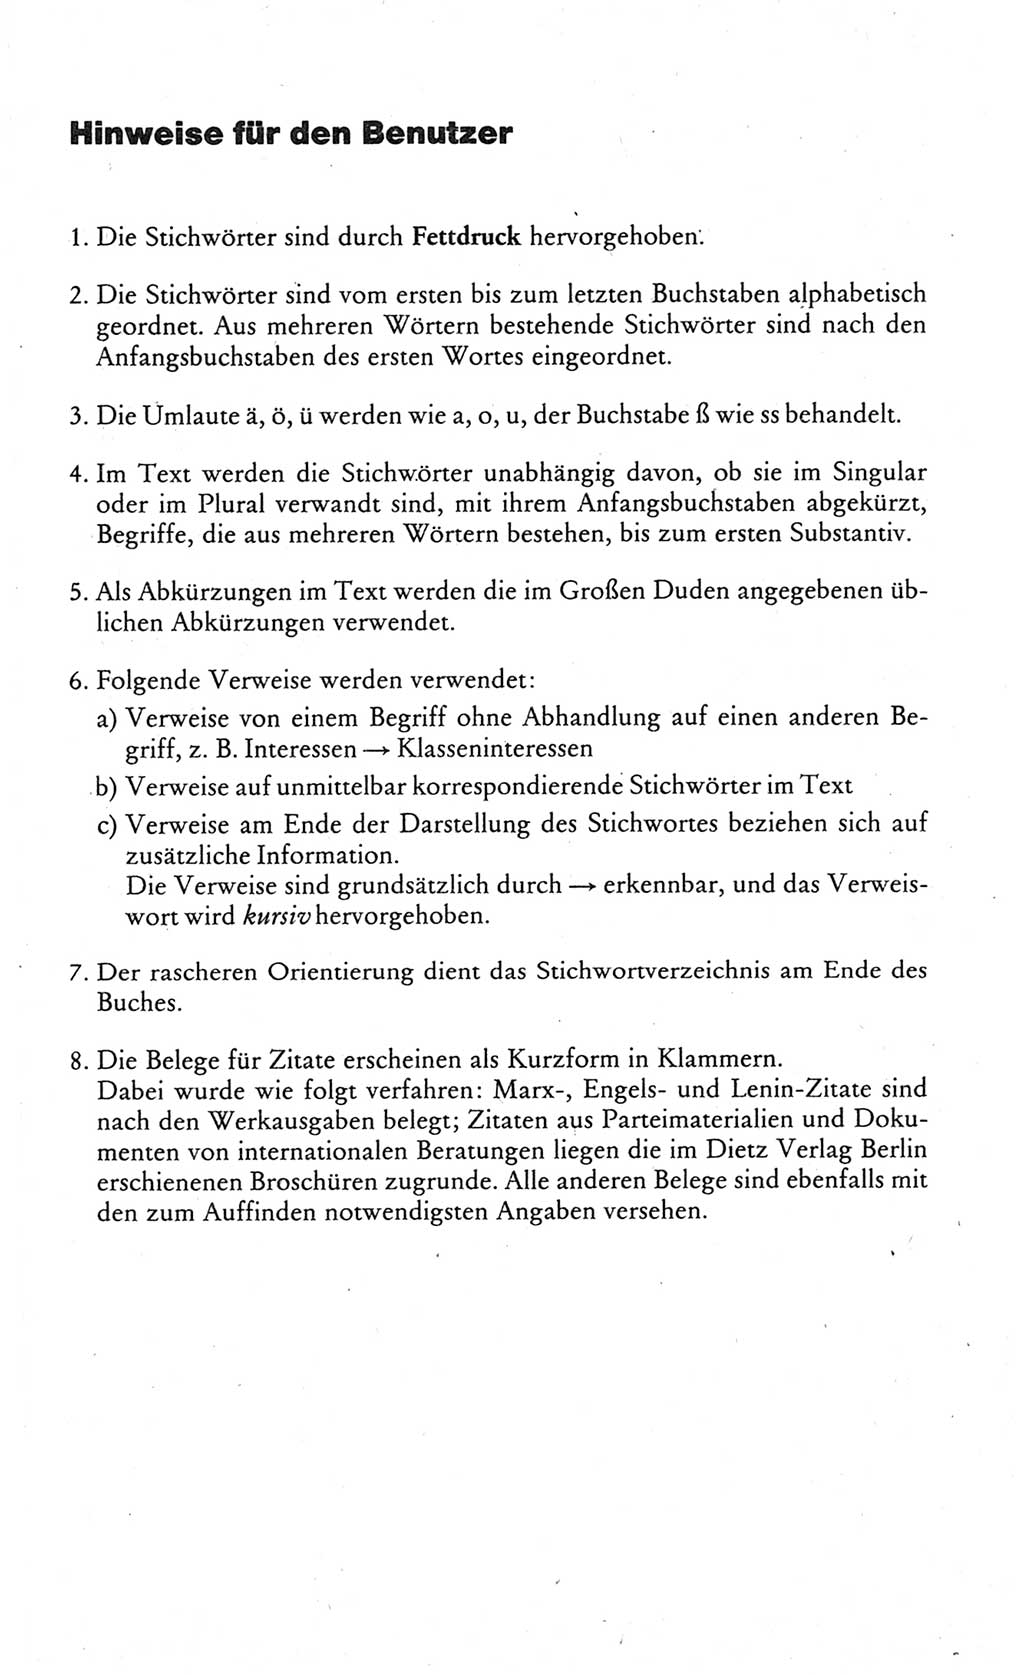 Wörterbuch des wissenschaftlichen Kommunismus [Deutsche Demokratische Republik (DDR)] 1984, Seite 8 (Wb. wiss. Komm. DDR 1984, S. 8)